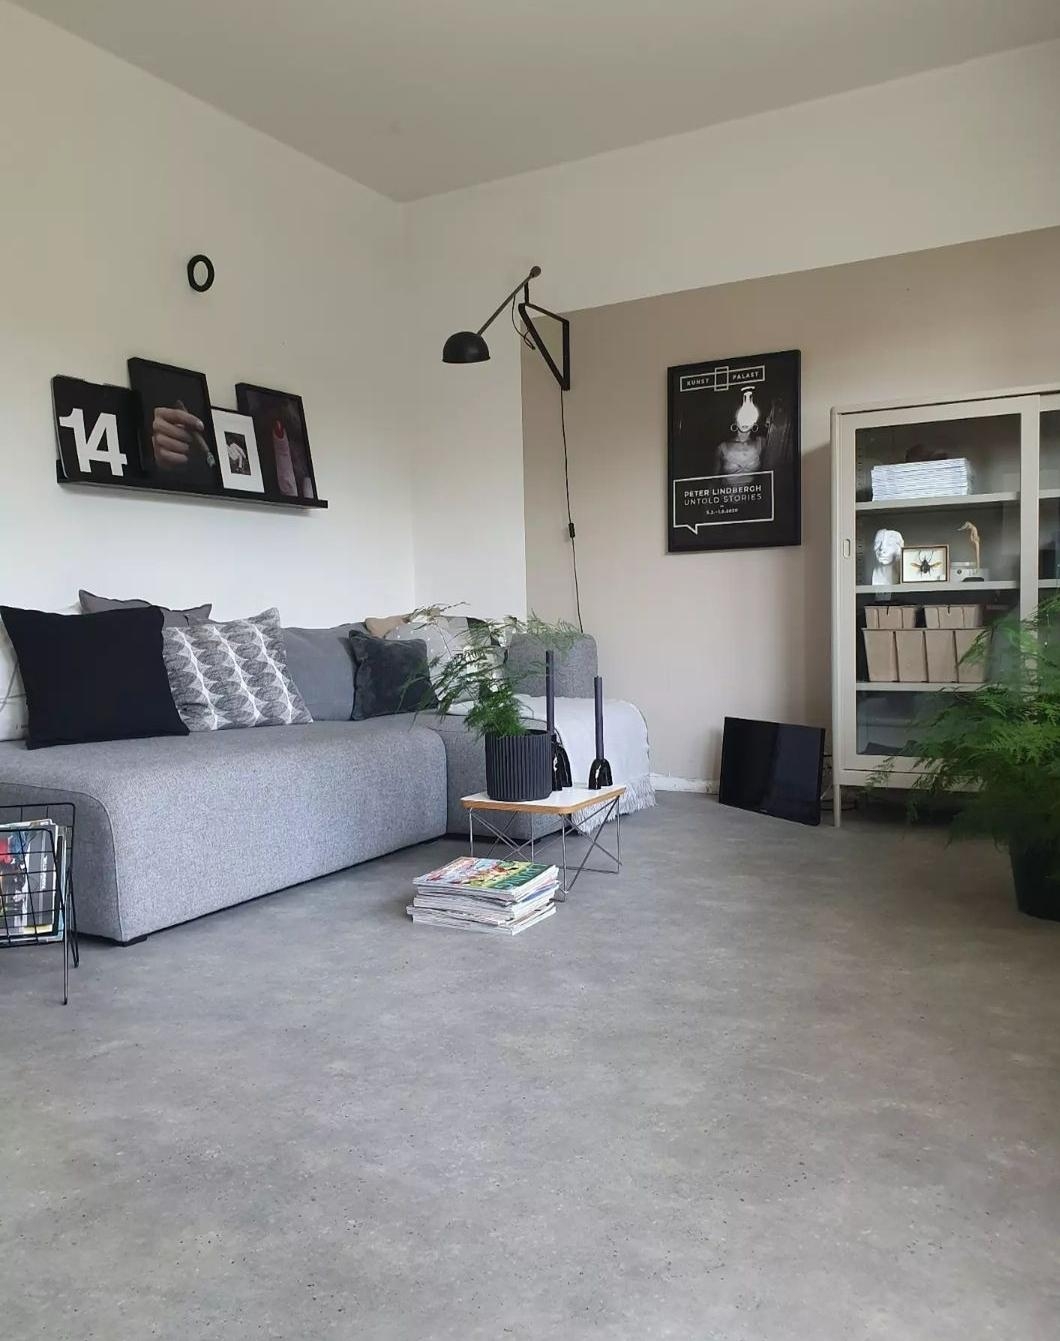 So sieht das Wohnzimmer nicht mehr aus🙈 #wohnzimmer #sofa #couch #haydesign